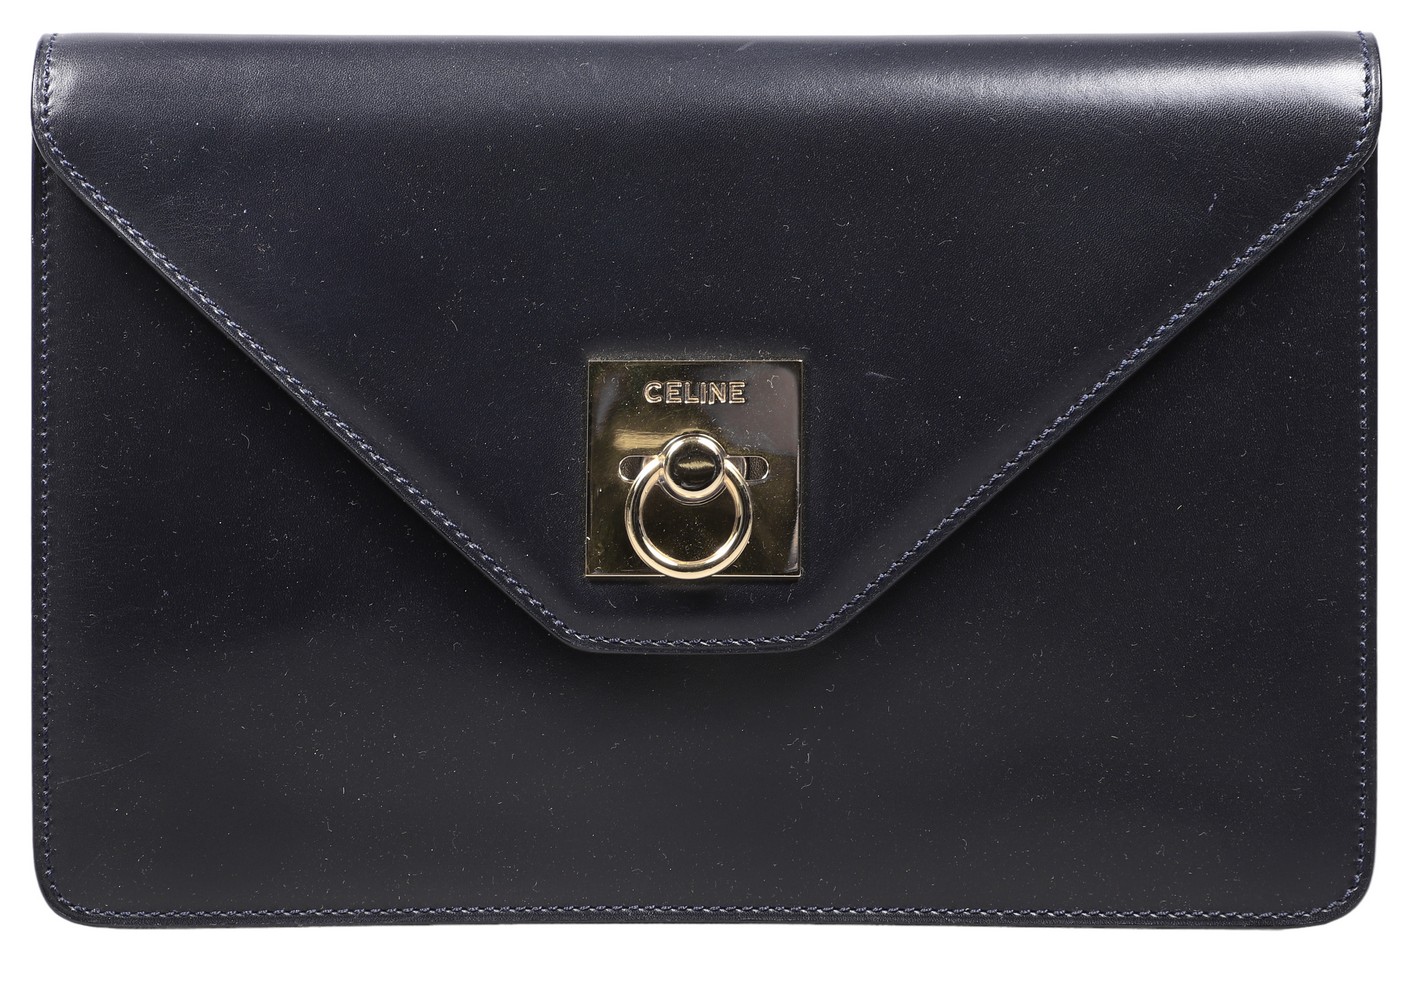 Navy leather Celine envelope clutch,